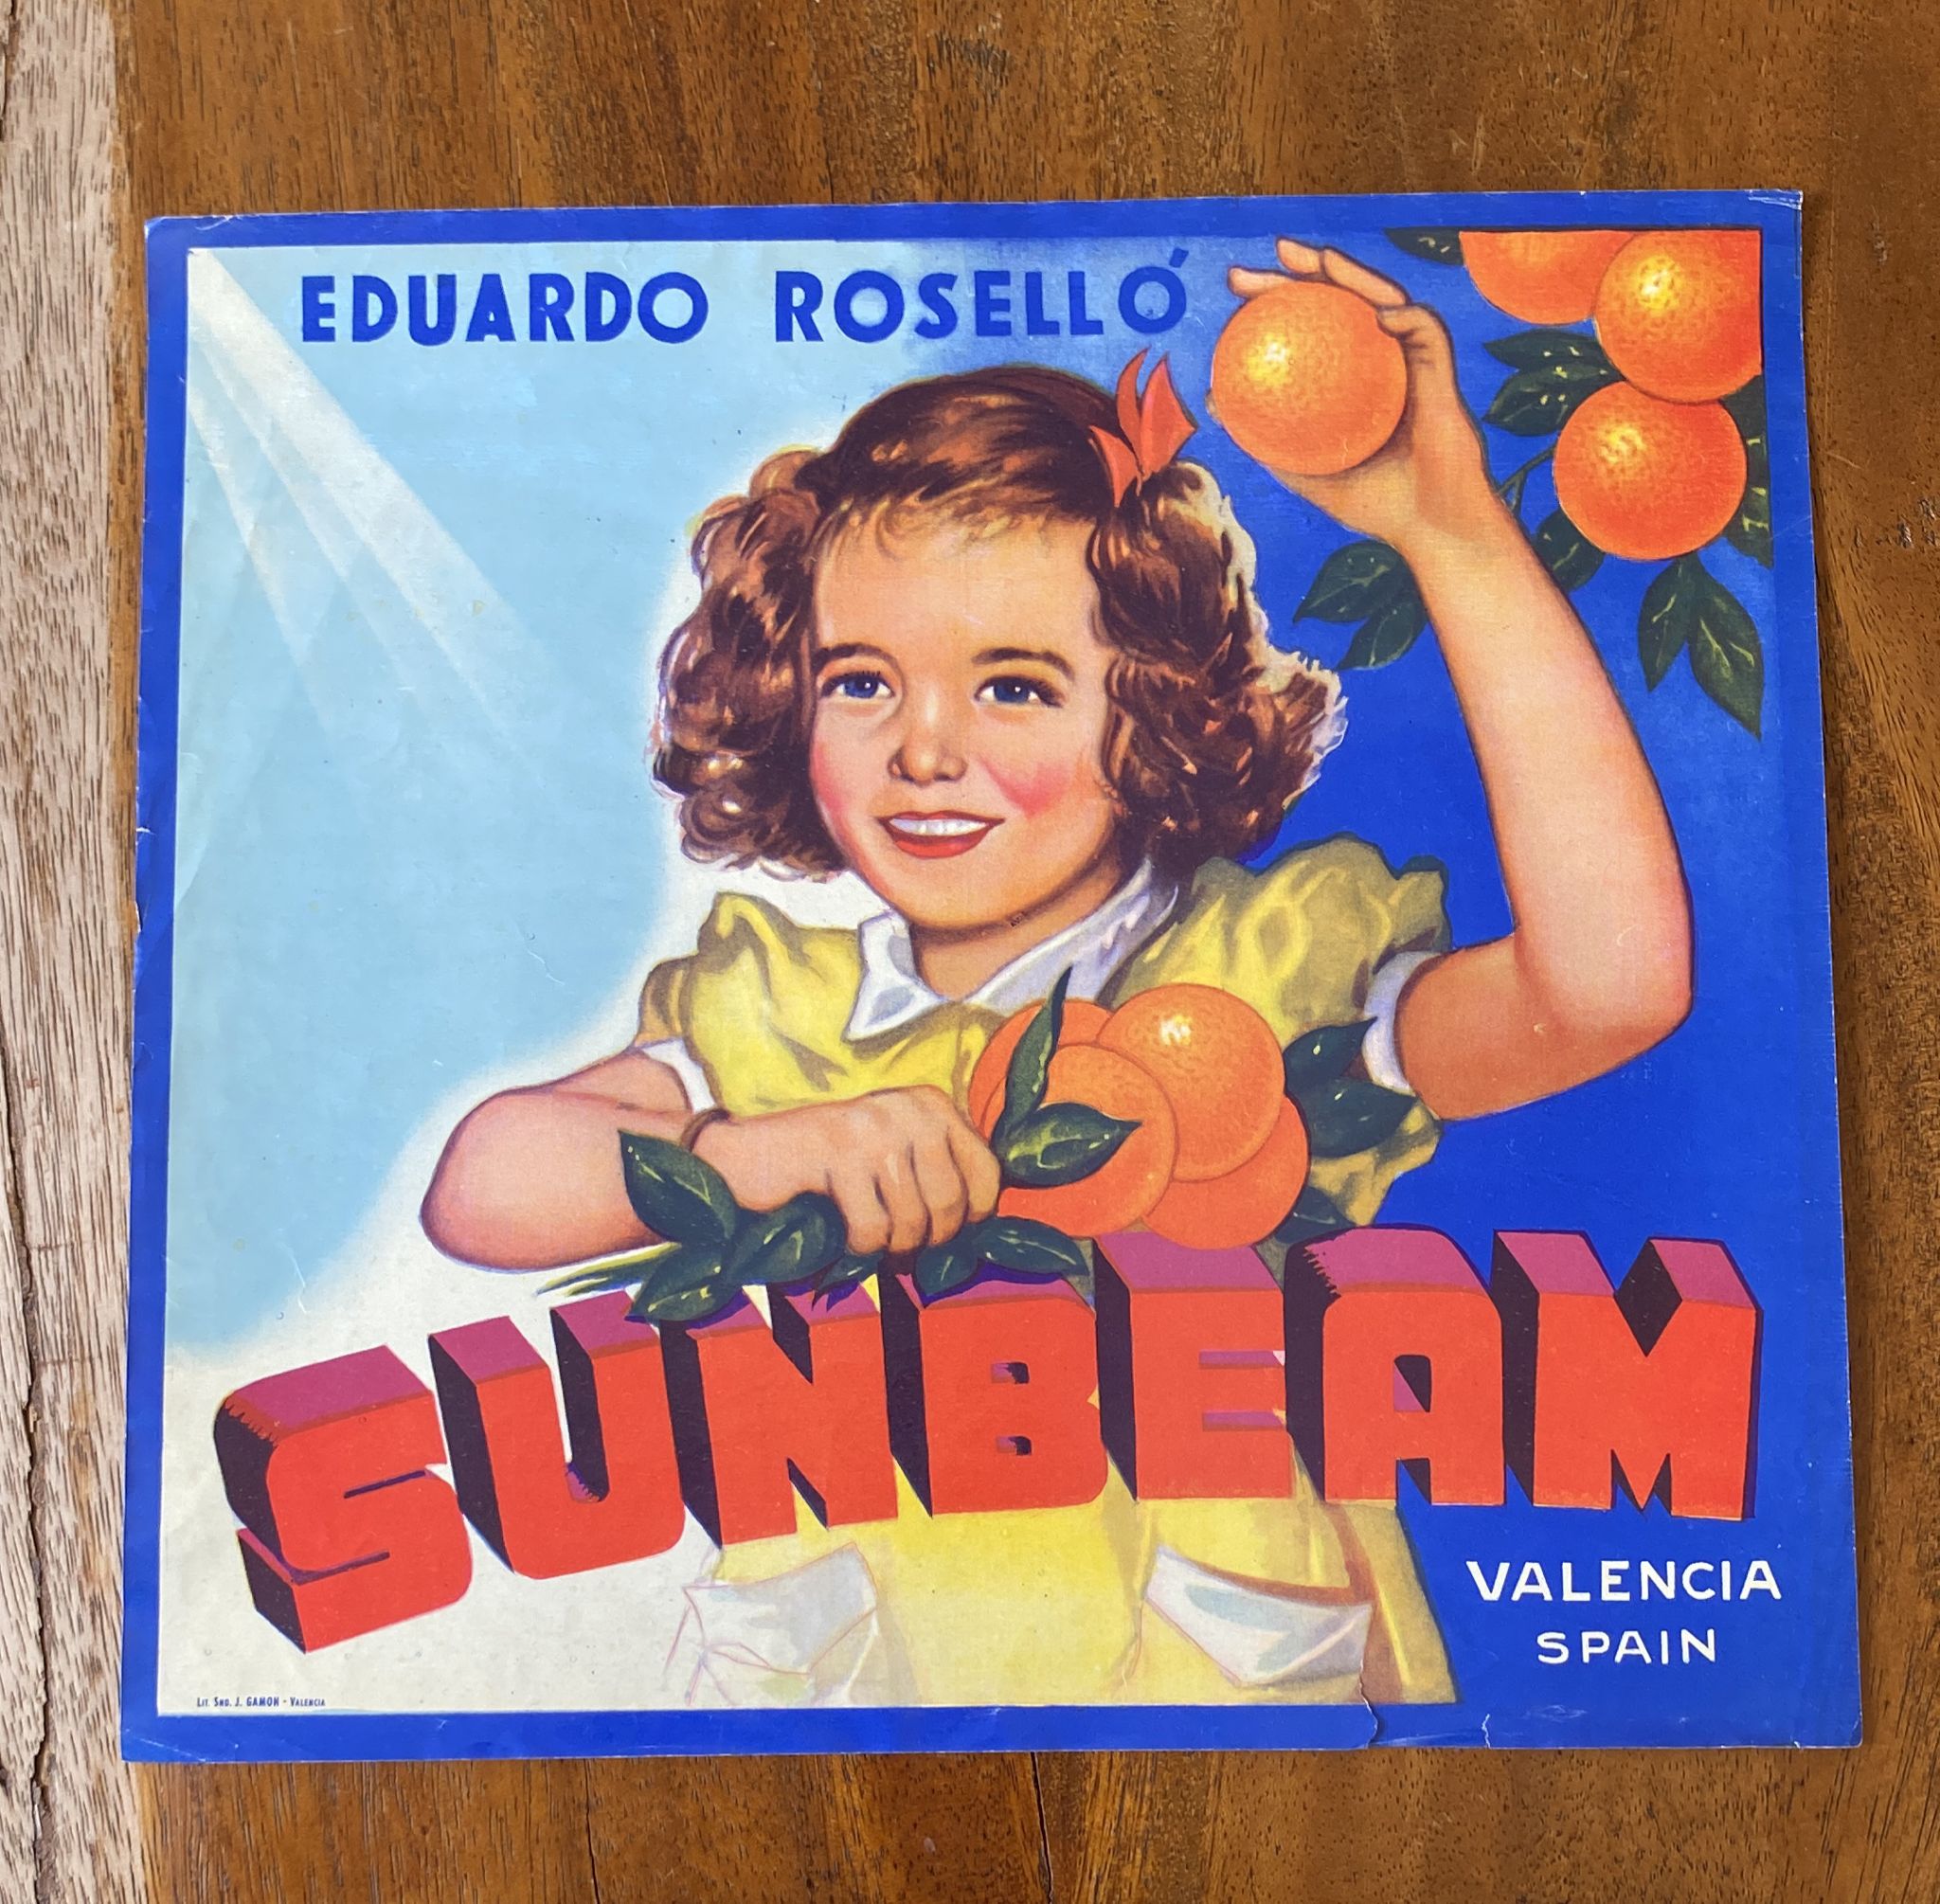 Sunbeam. Etiqueta (25x28 cms.) E. Roselló, Valencia